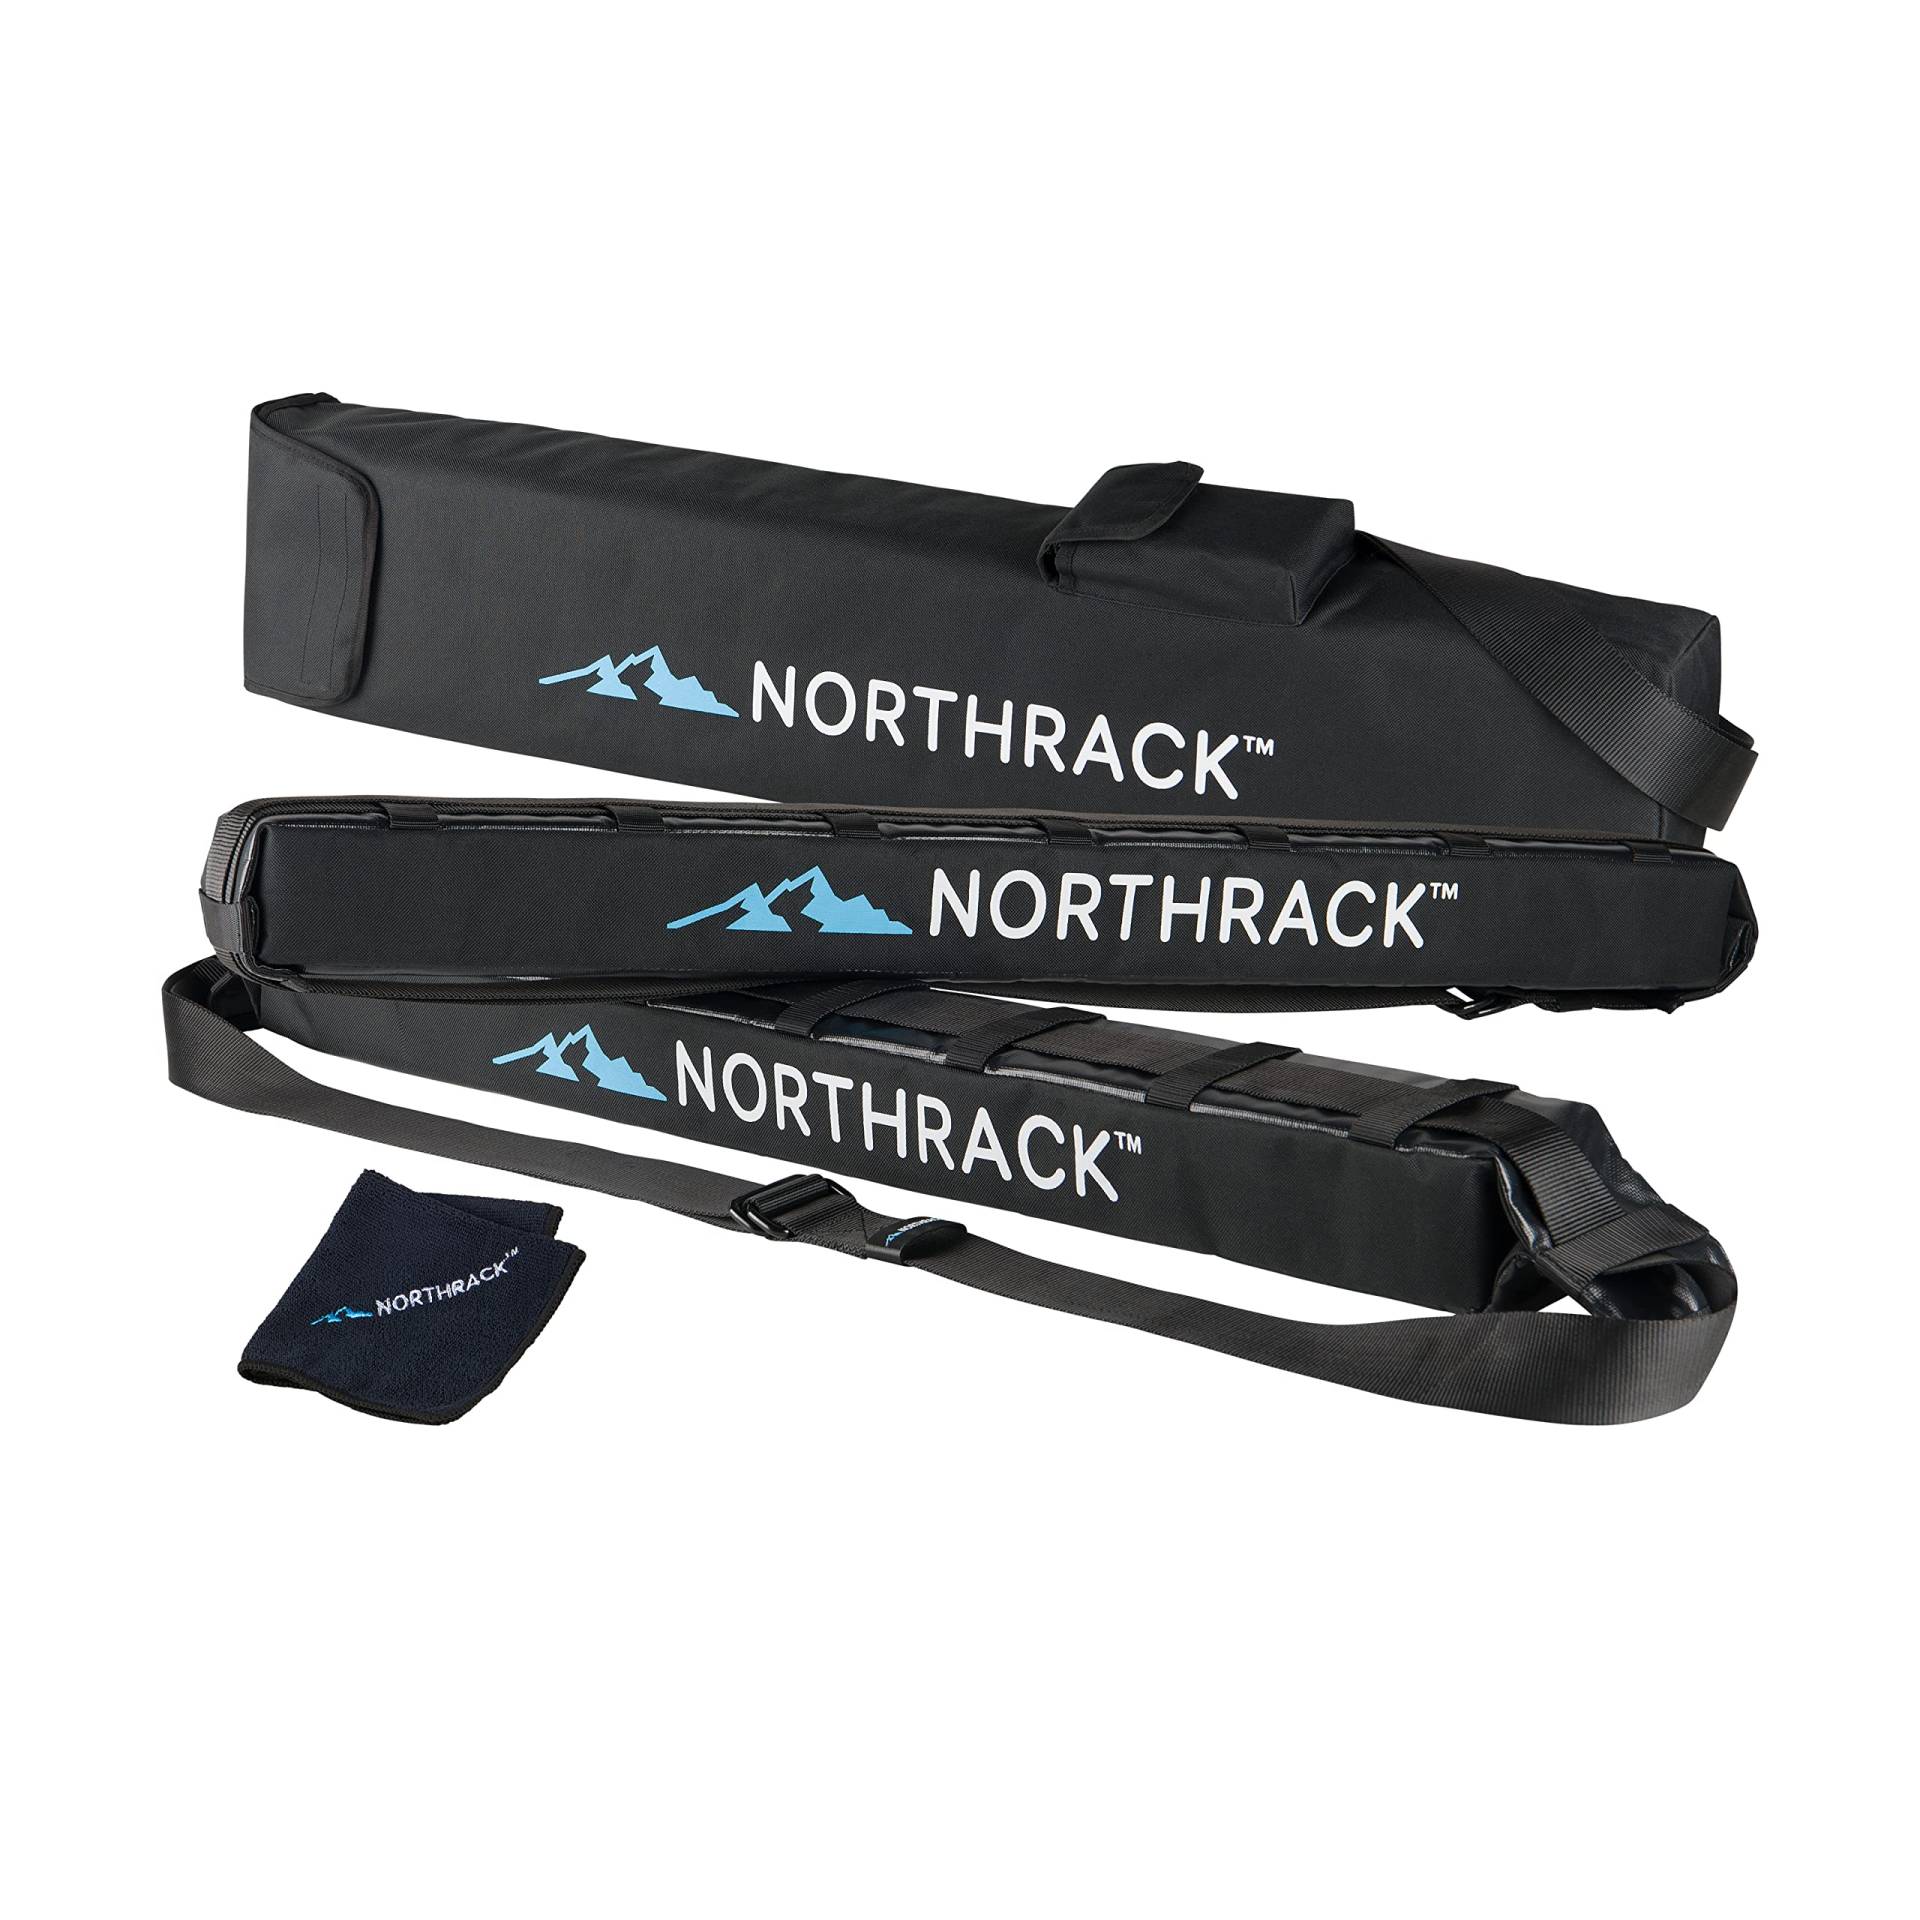 NORTHRACK Universal crashgetestet Dachträger für SUP, Skis, Surfboard- passend für alle Autos mit 4 oder 5 Türen, schwarz, H8, B10, L100 cm von NORTHRACK